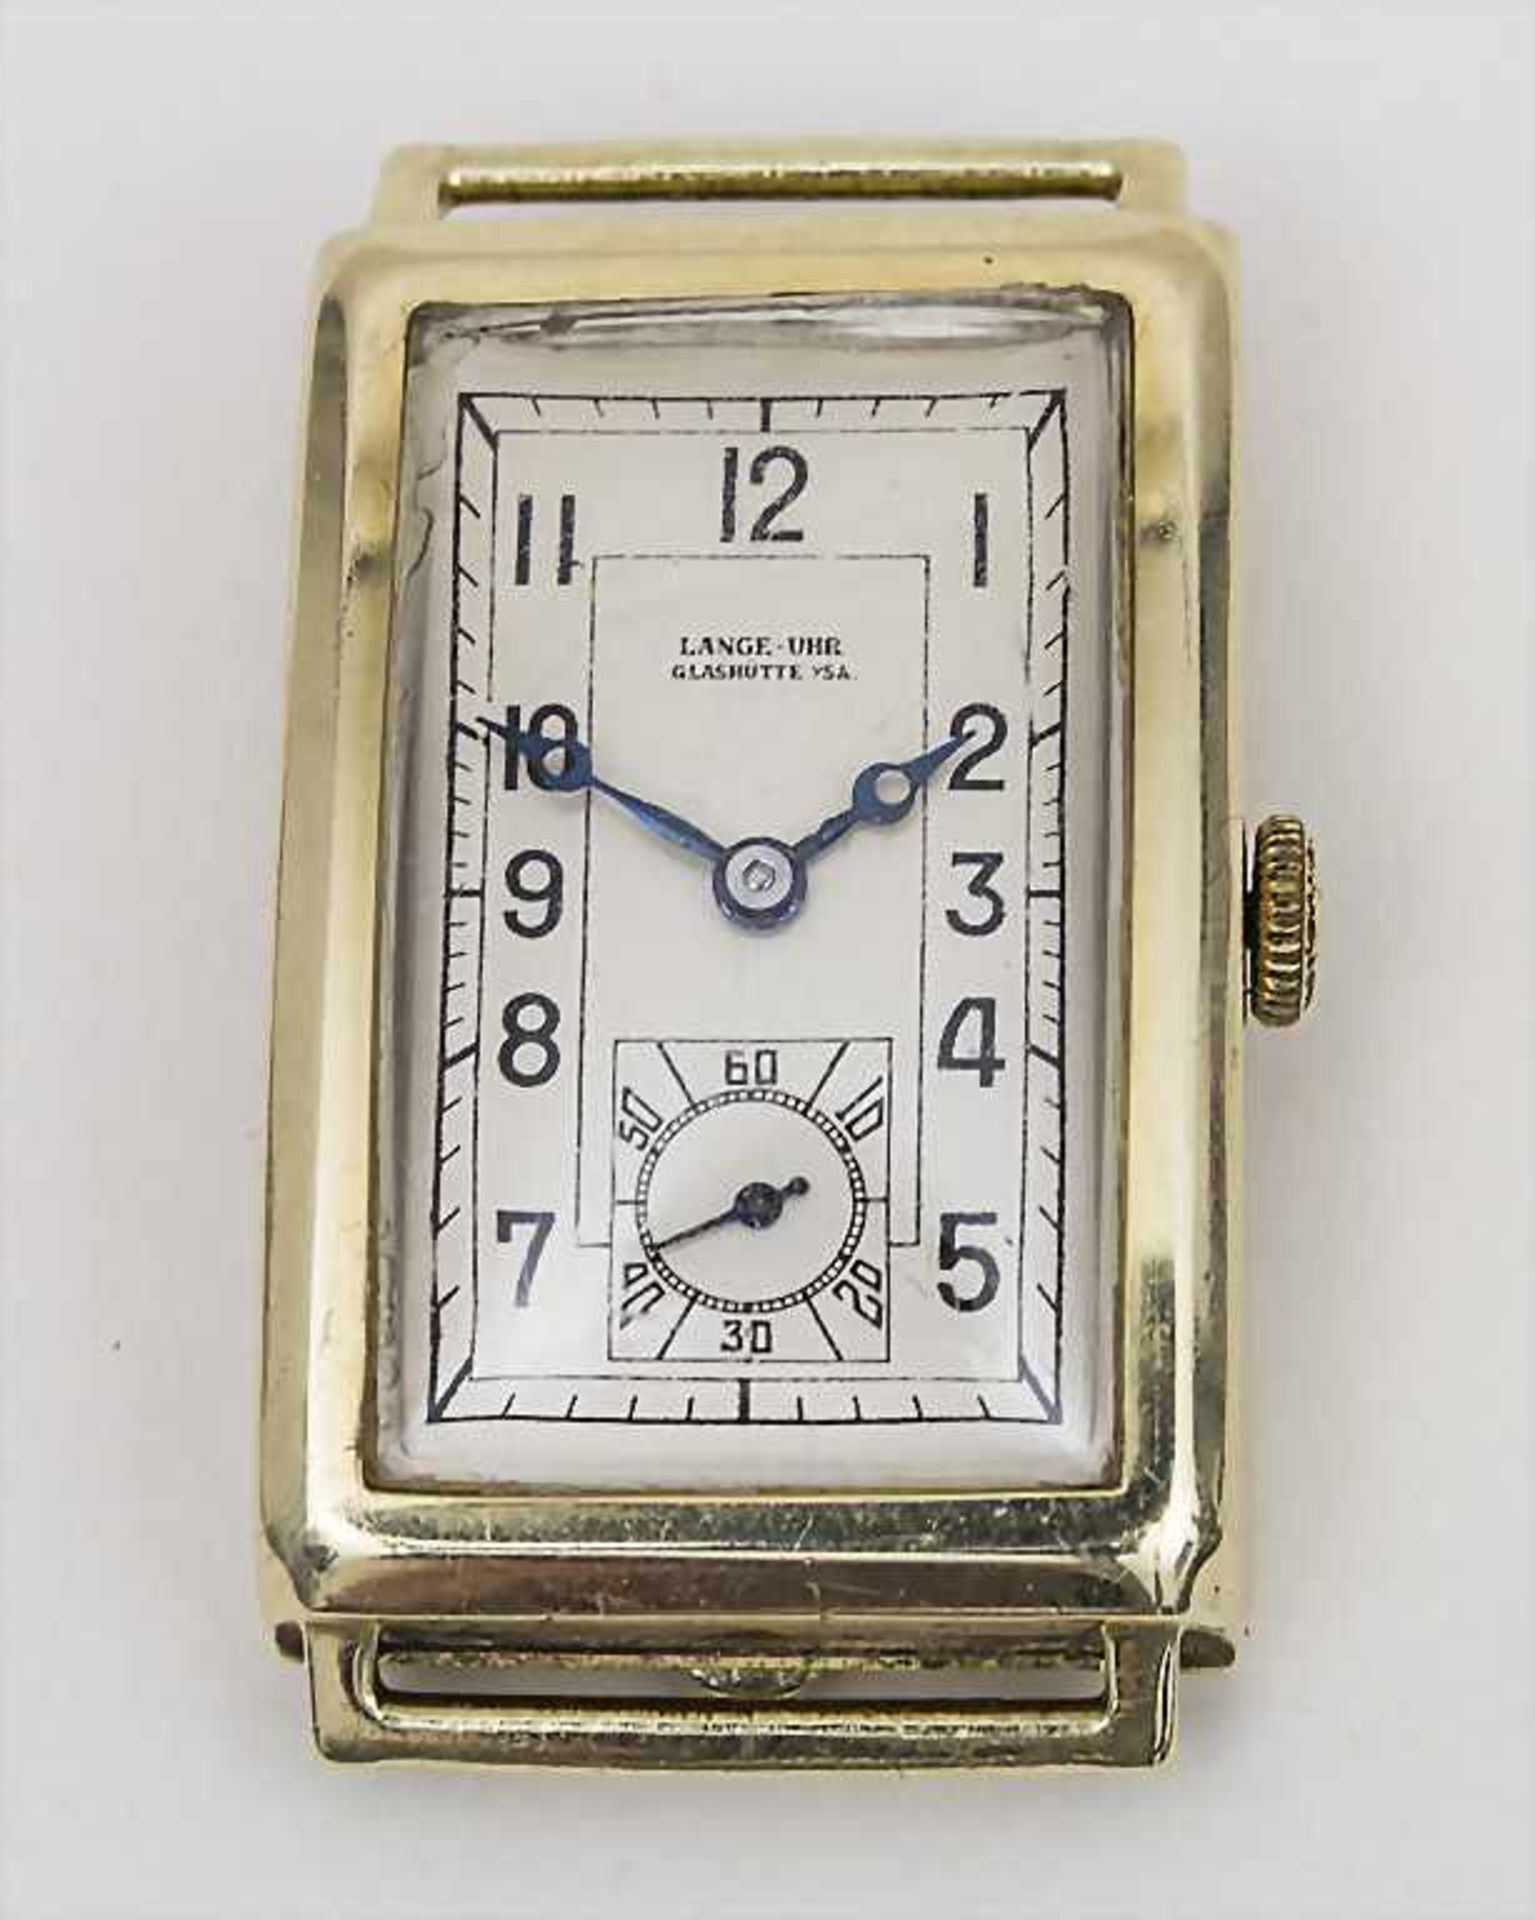 Herrenarmbanduhr / Wristwatch, LANGE-Uhr, Glashütte in Sachsen, ca. 1942